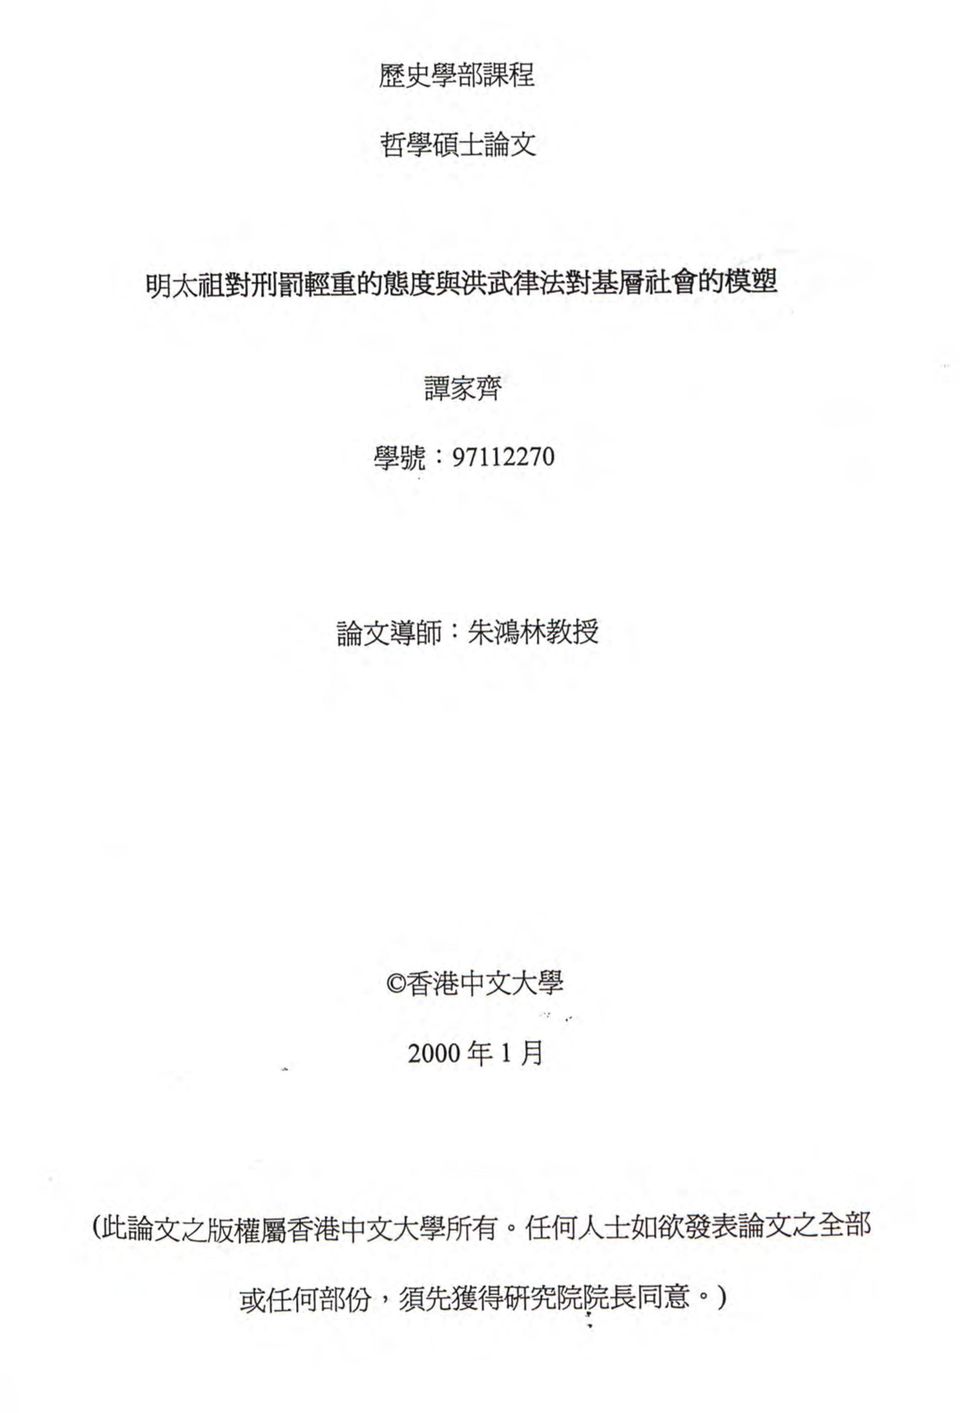 中 文 大 學 Ok 2000 年 1 月 ( 此 論 文 之 版 權 屬 香 港 中 文 大 學 所 有 任 何